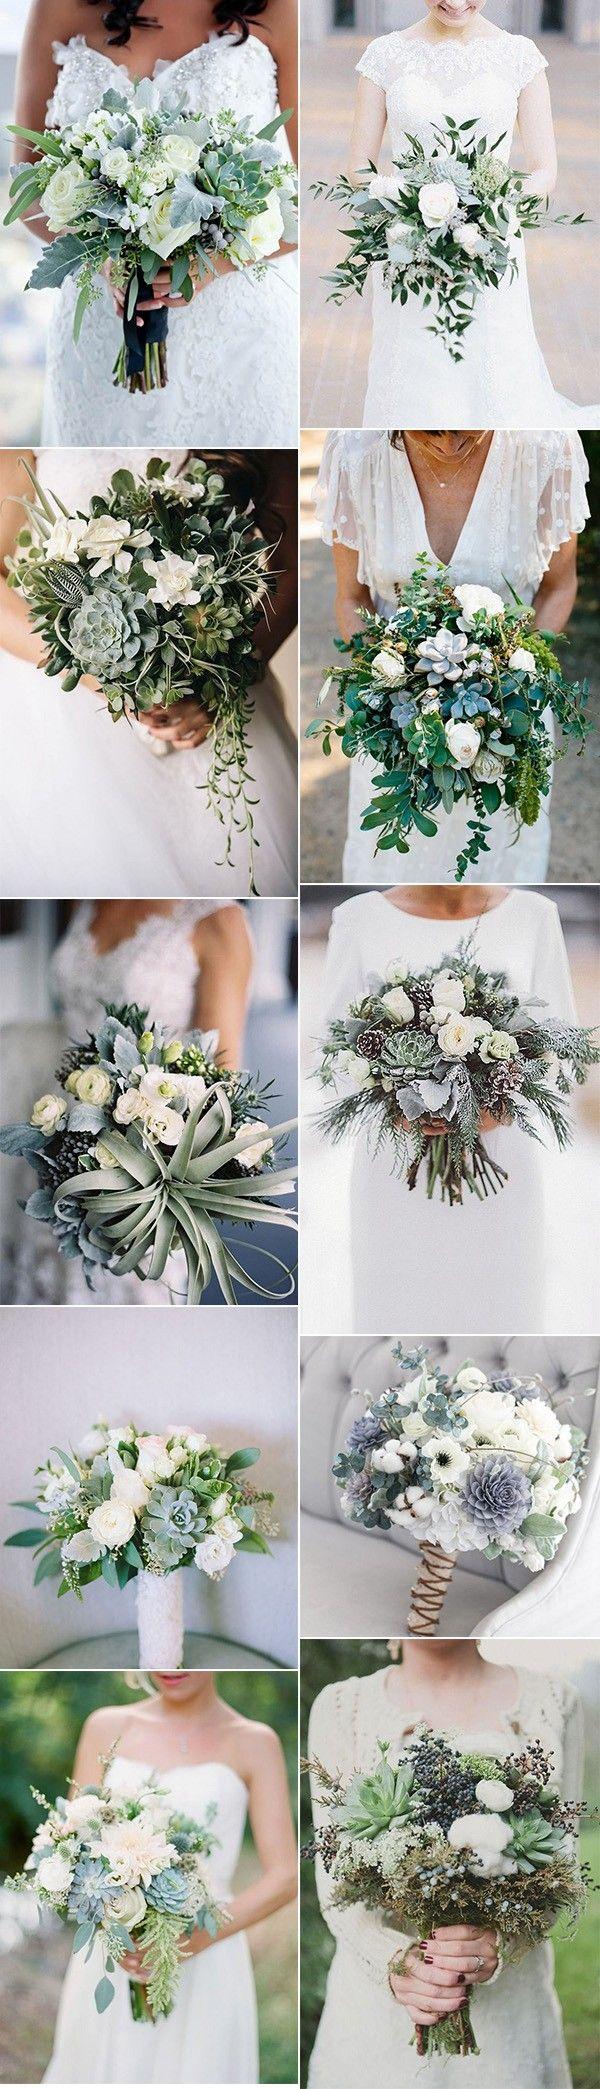 زفاف - 20 Trending Wedding Bouquet Ideas With Succulents